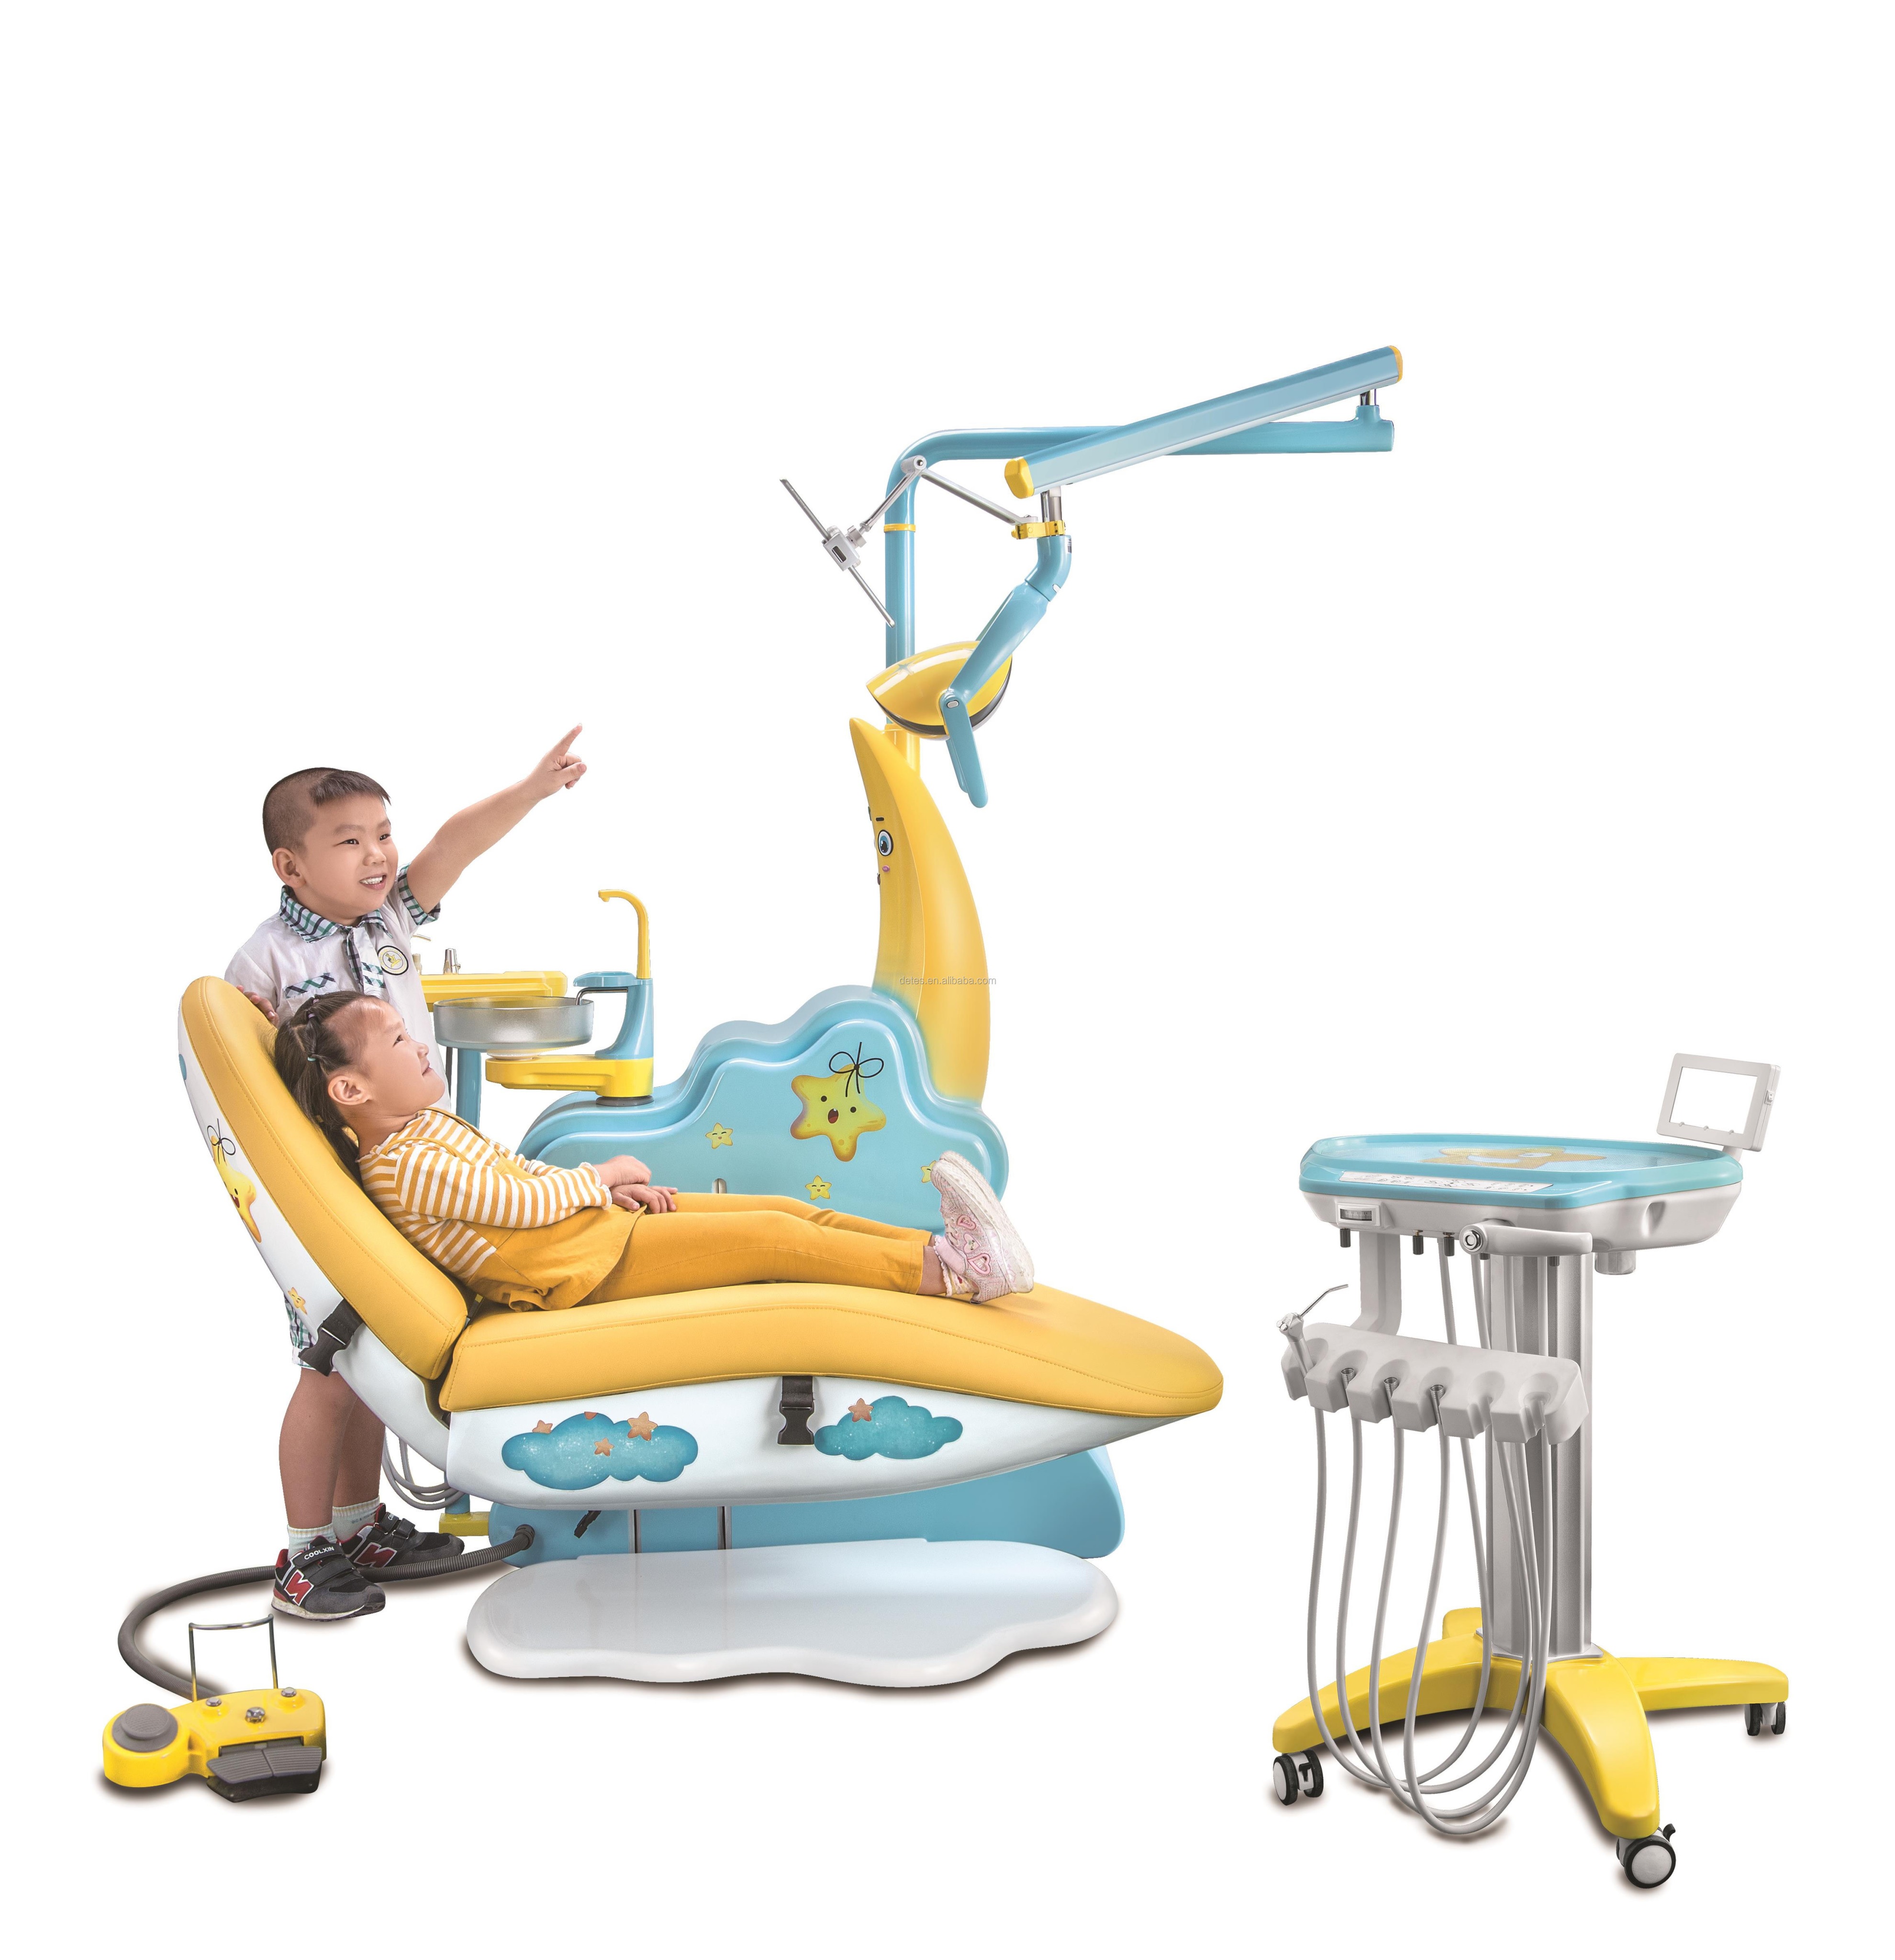 Hệ thống ghế máy Nha khoa cho trẻ em với thiết kế rất hình Ông mặt trăng đáng yêu